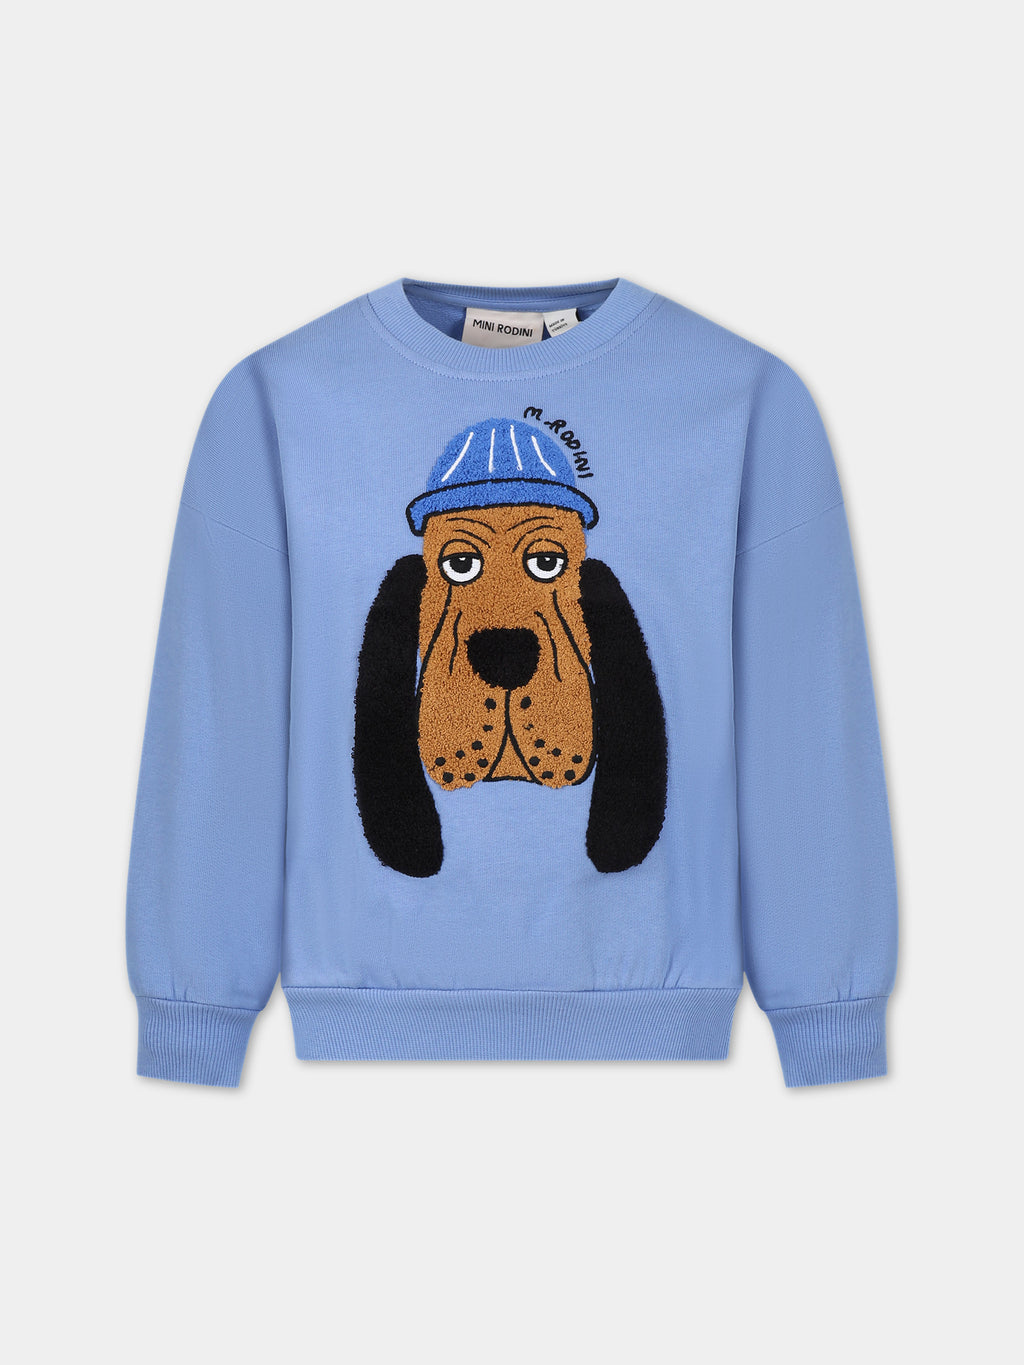 Sweat-shirt bleu ciel pour enfants avec chien